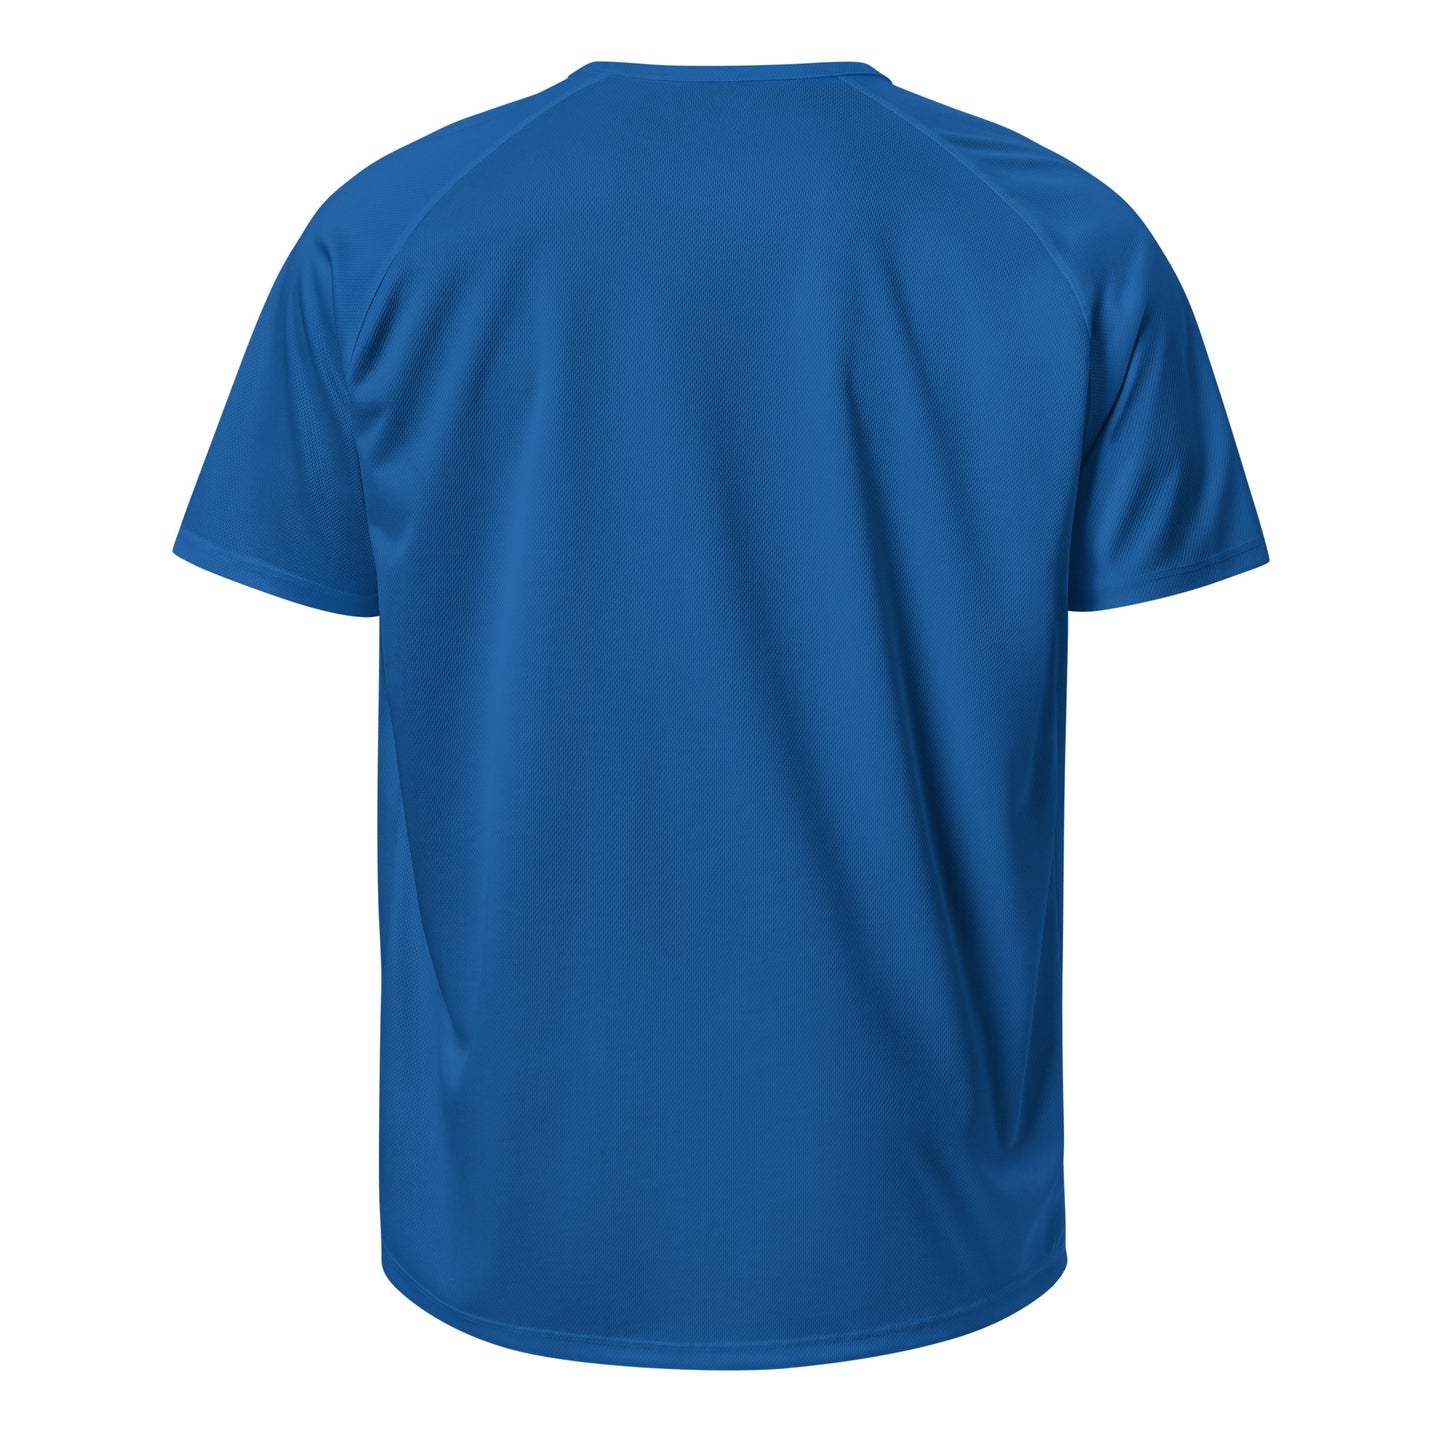 M103 - เสื้อยืด/กีฬา/ผ้าระบายอากาศ (โพนี่ : สีฟ้า)